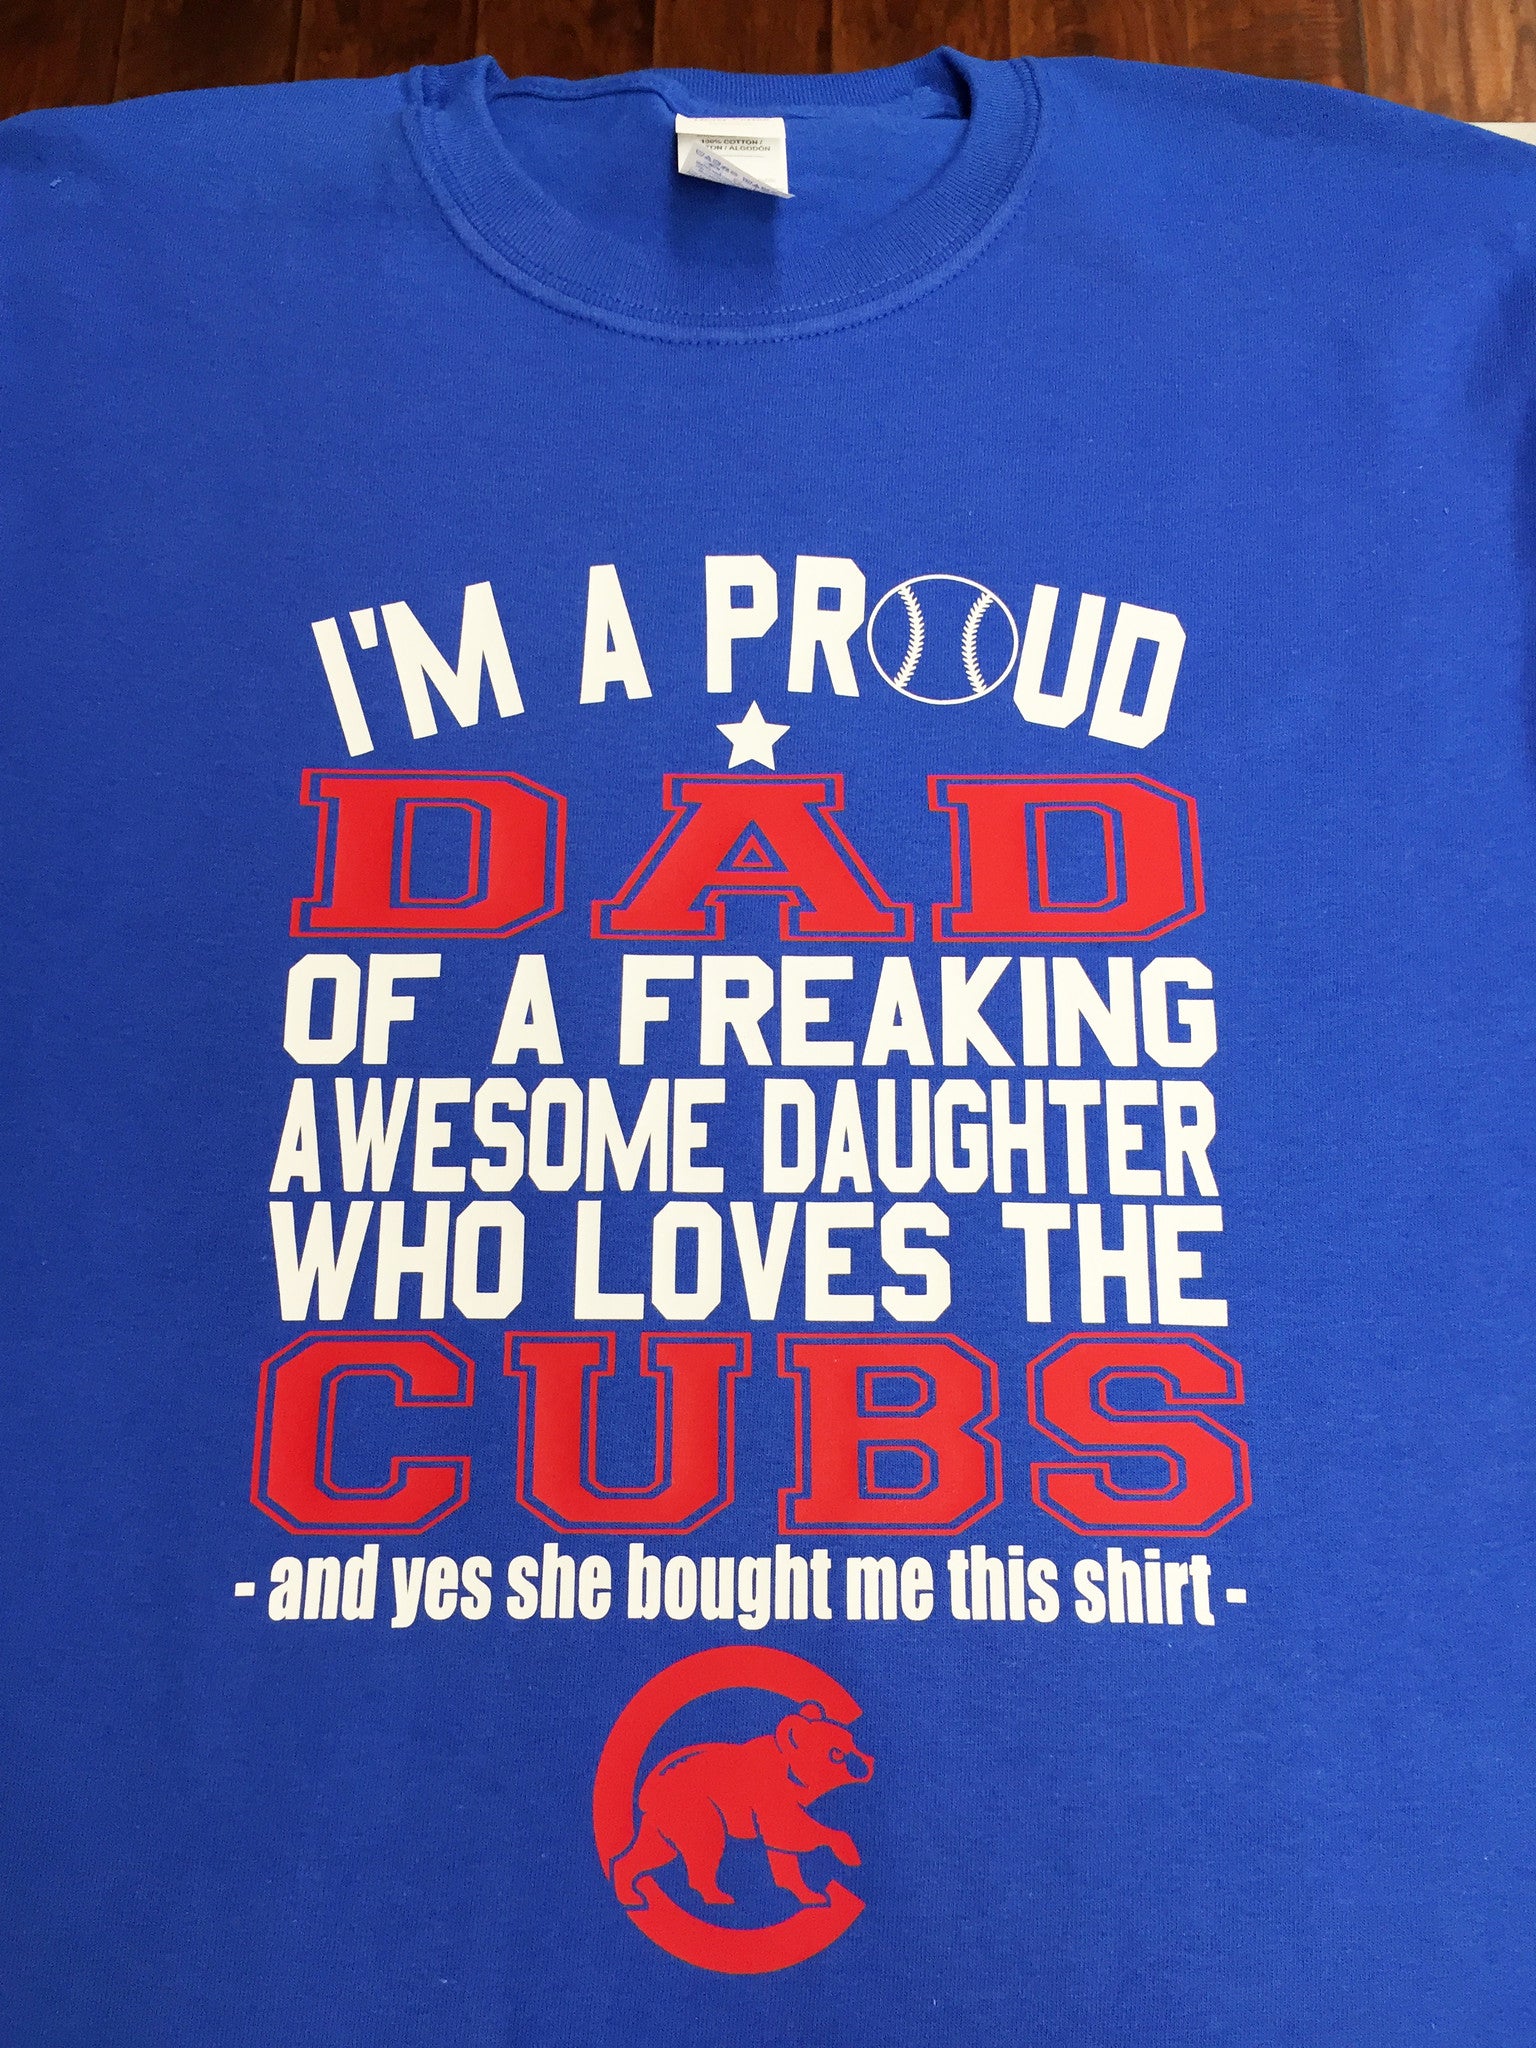 buy cubs shirt